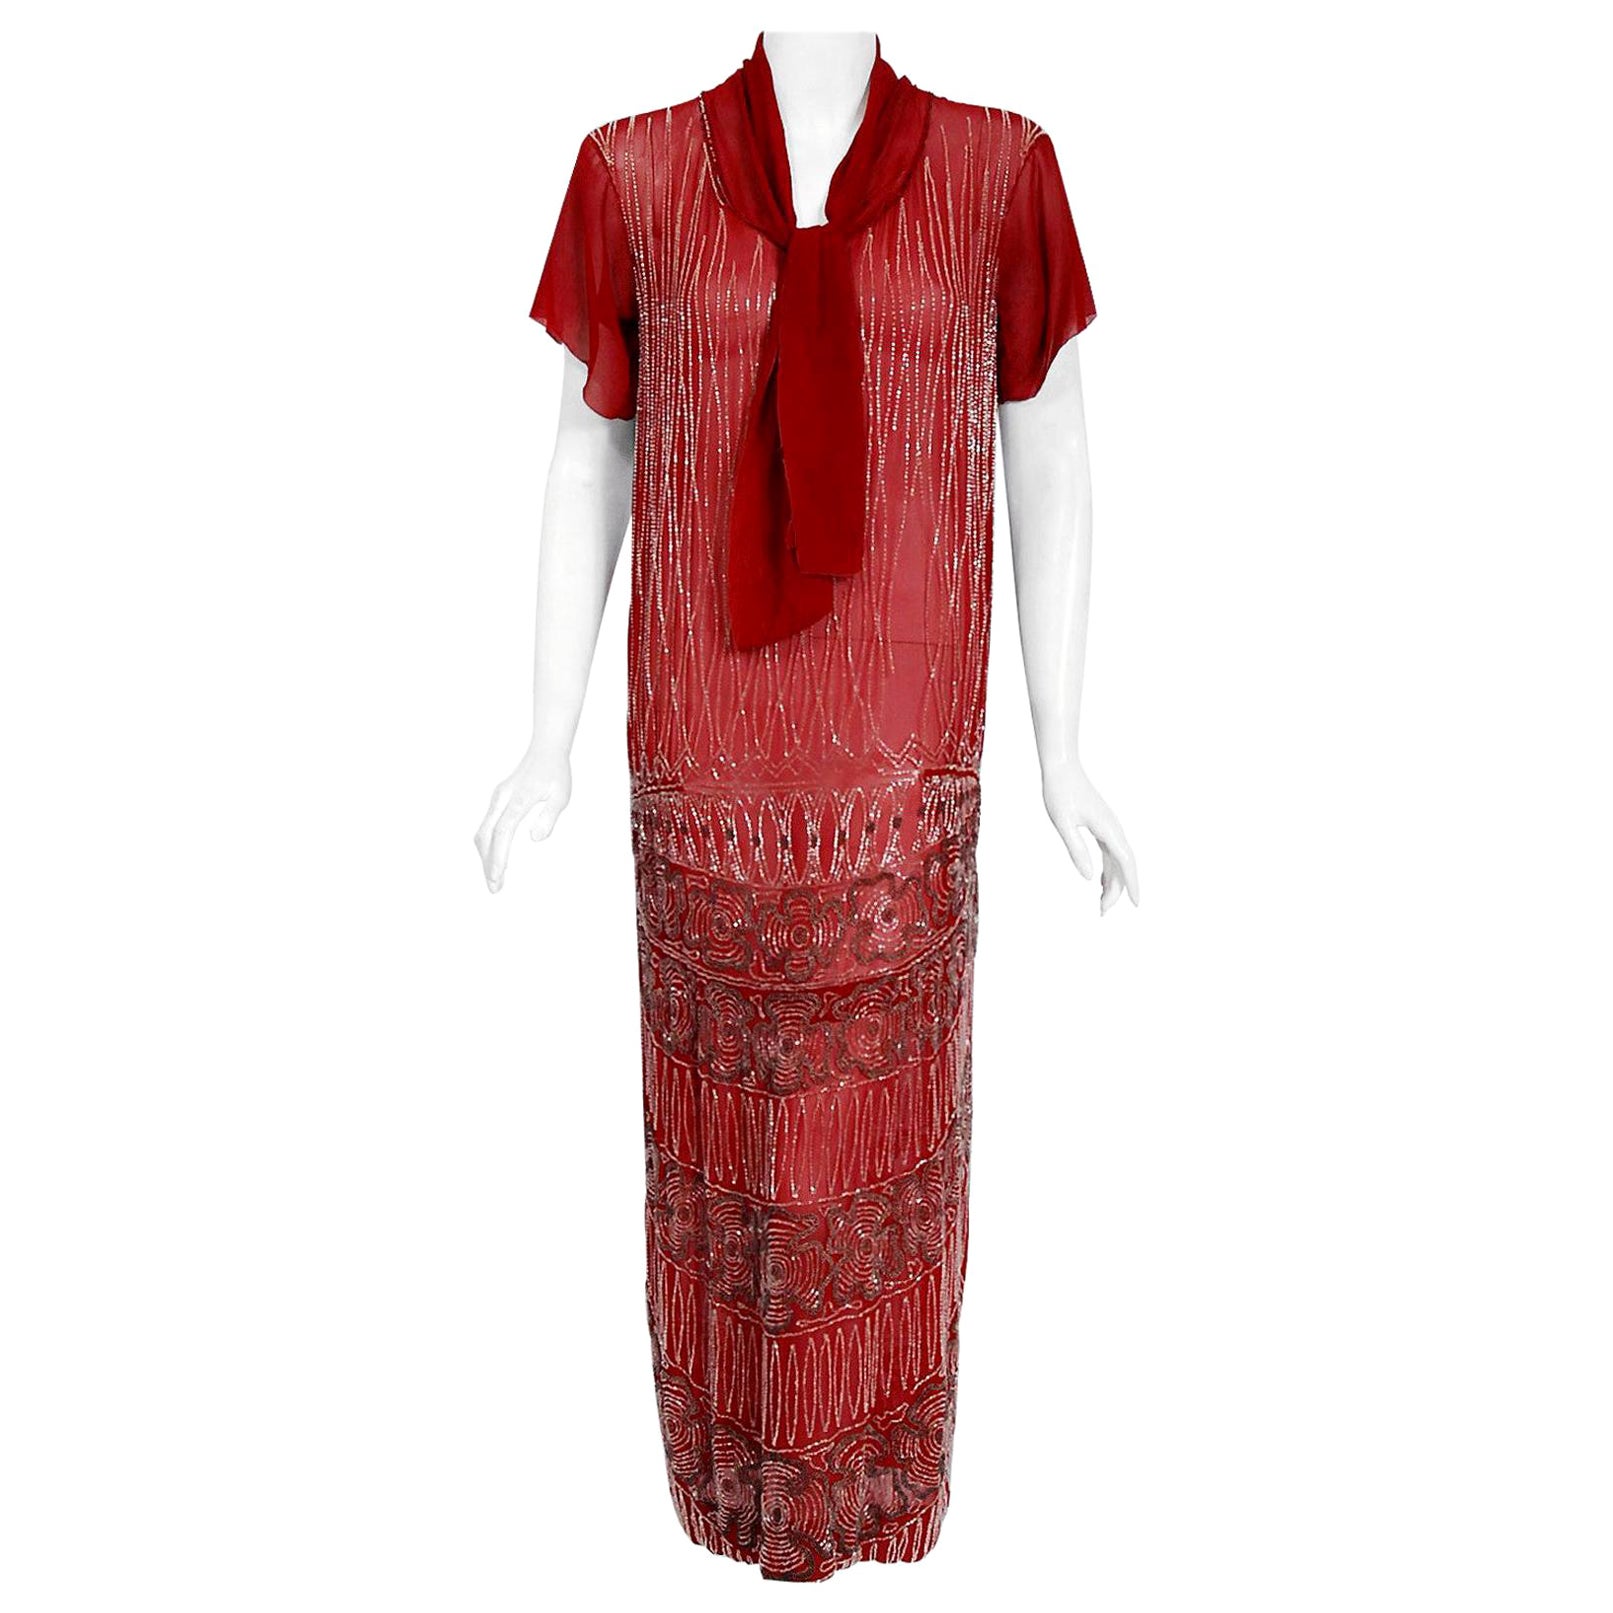 Robe de soirée vintage couture rouge bourgogne perlée en soie transparente avec nœud de foulard, années 1920